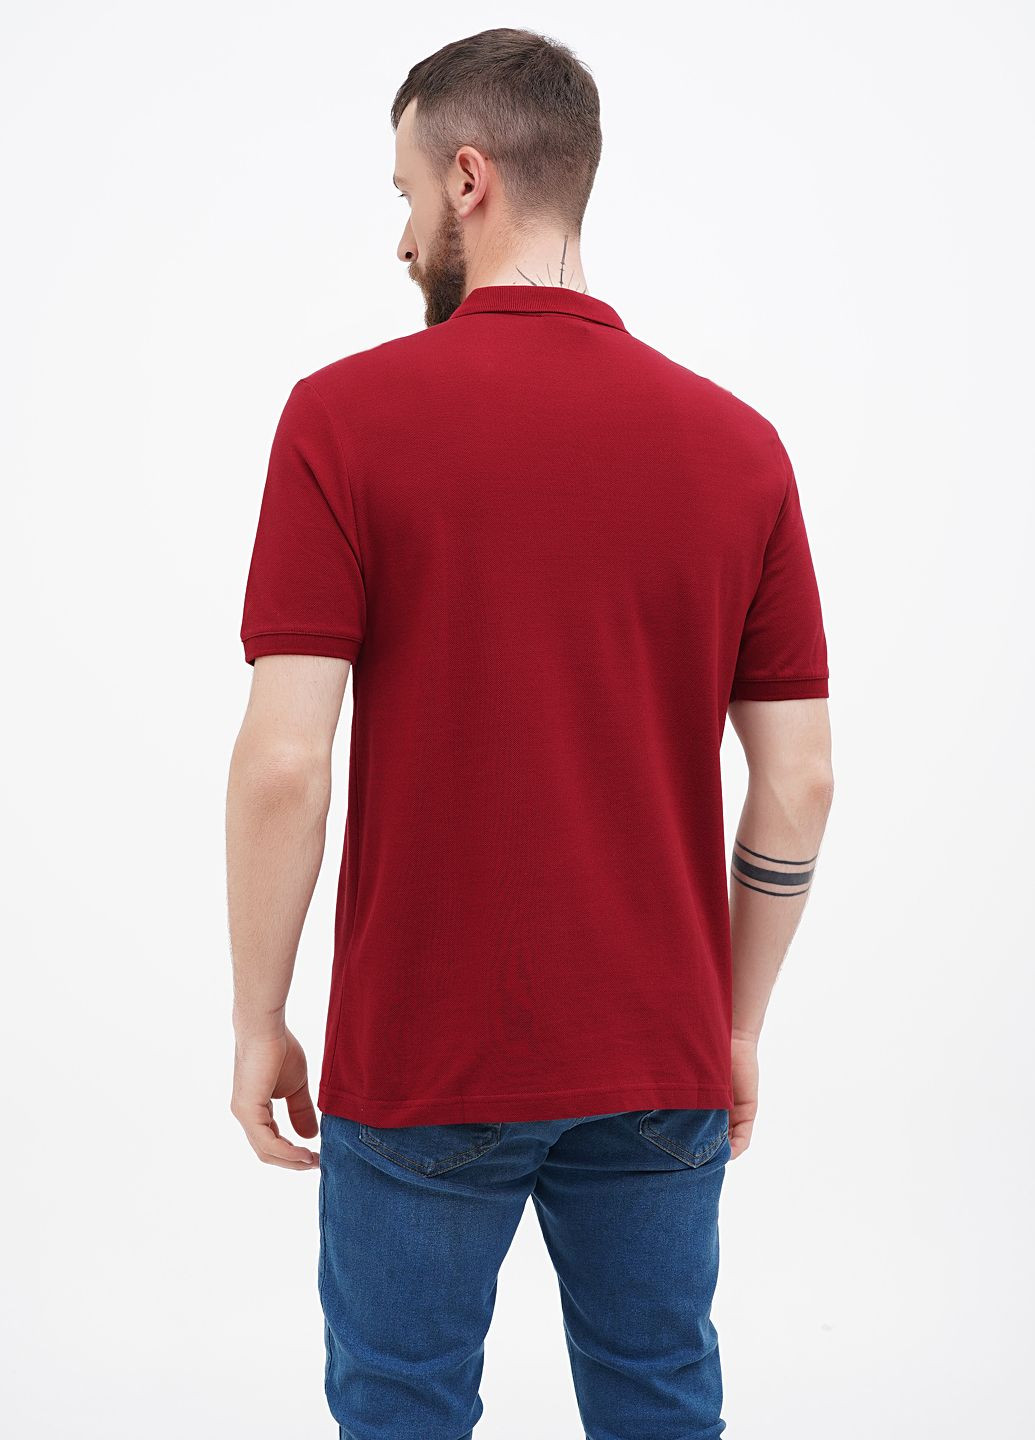 Бордовая футболка-футболка поло u.s. polo assn мужская для мужчин U.S. Polo Assn.